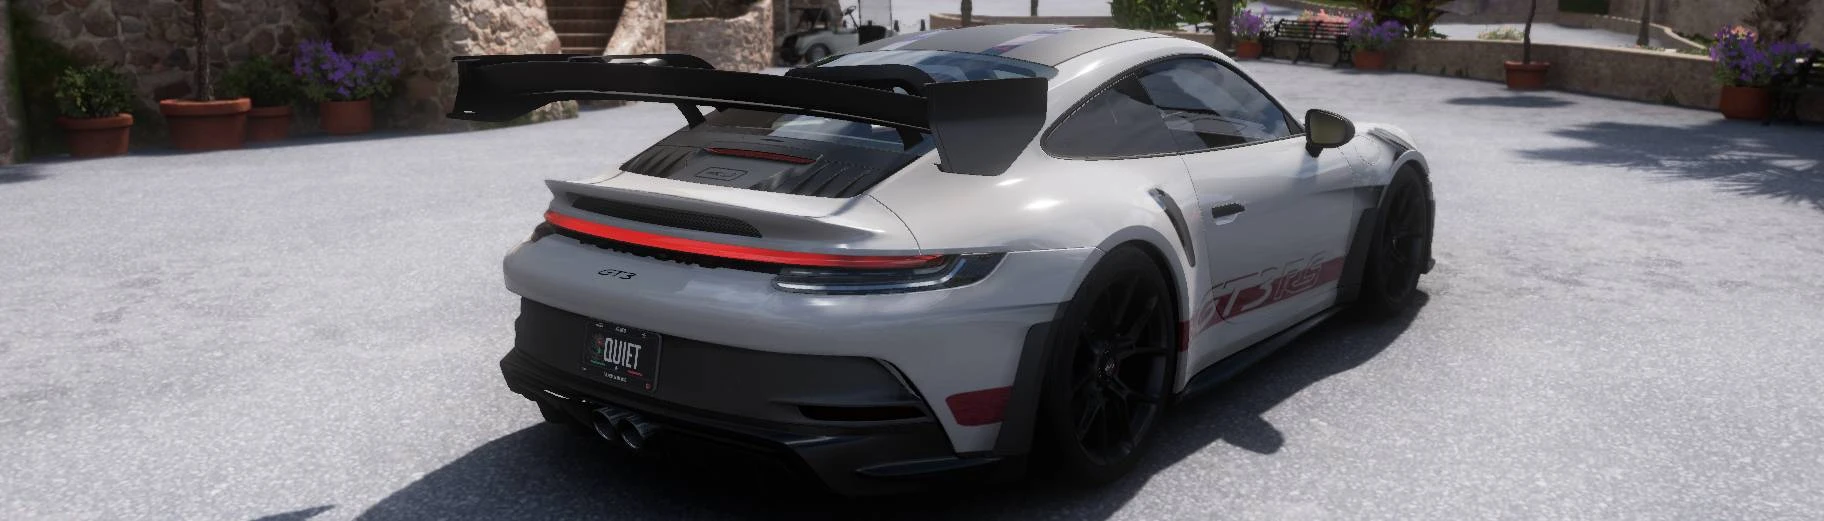 All the Porsche cars in Forza Horizon 5